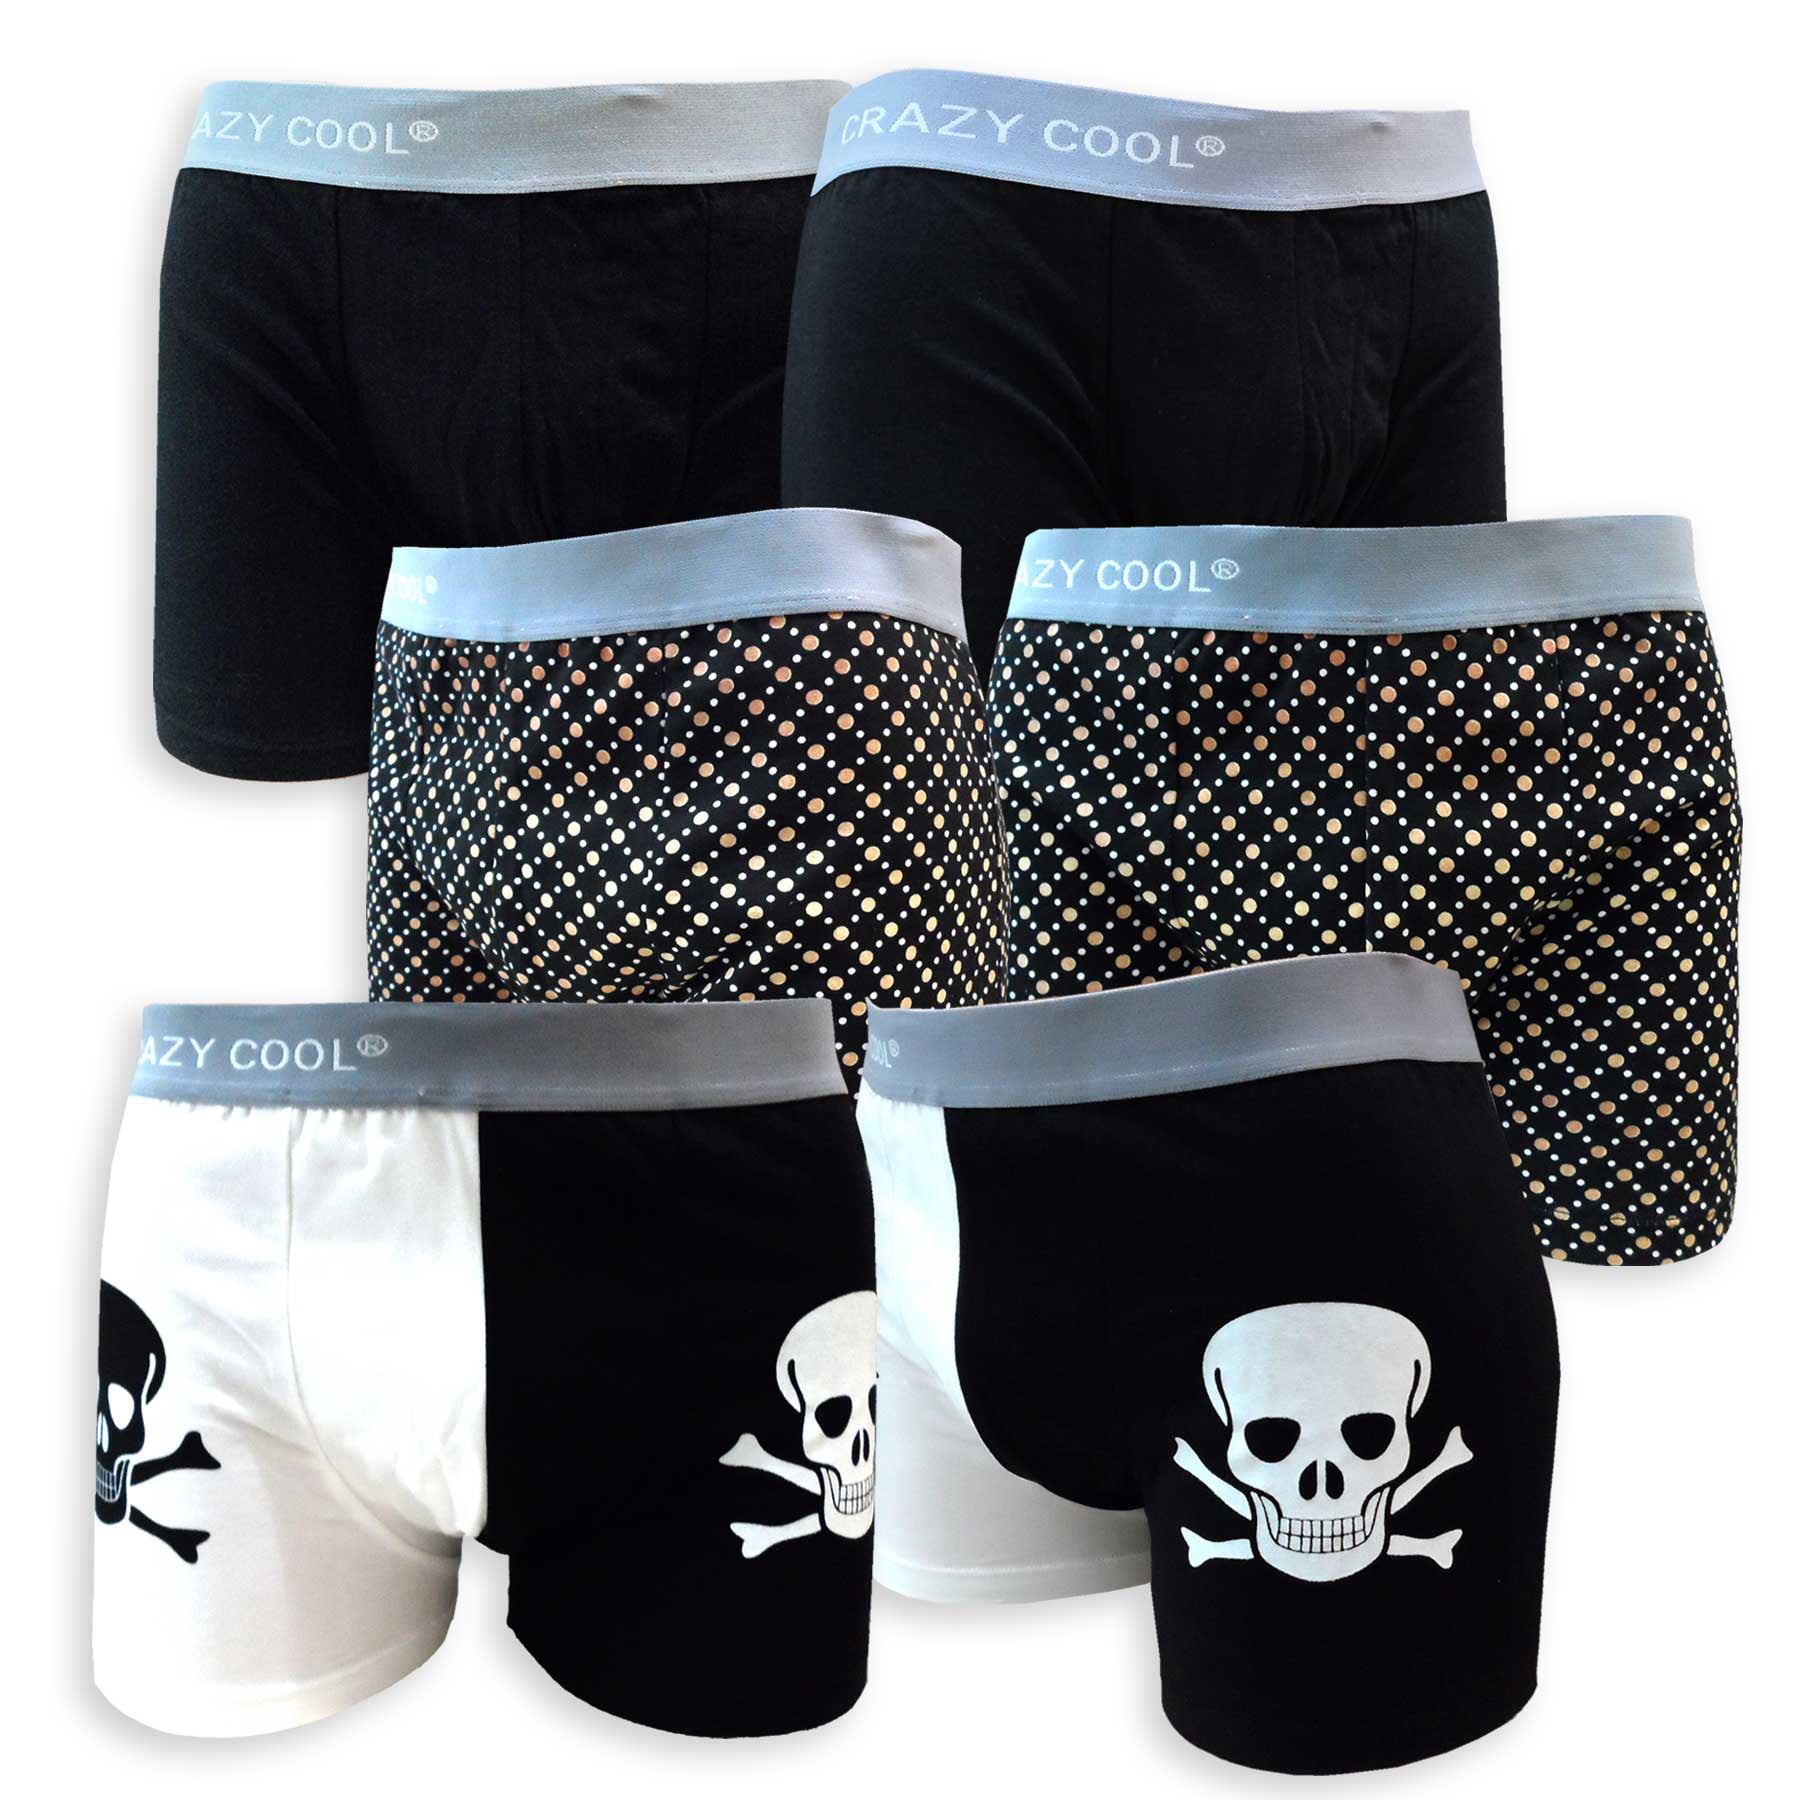 Crazy Cool Men's Cotton Boxer Briefs Underwear Variety Designs of 6 ...